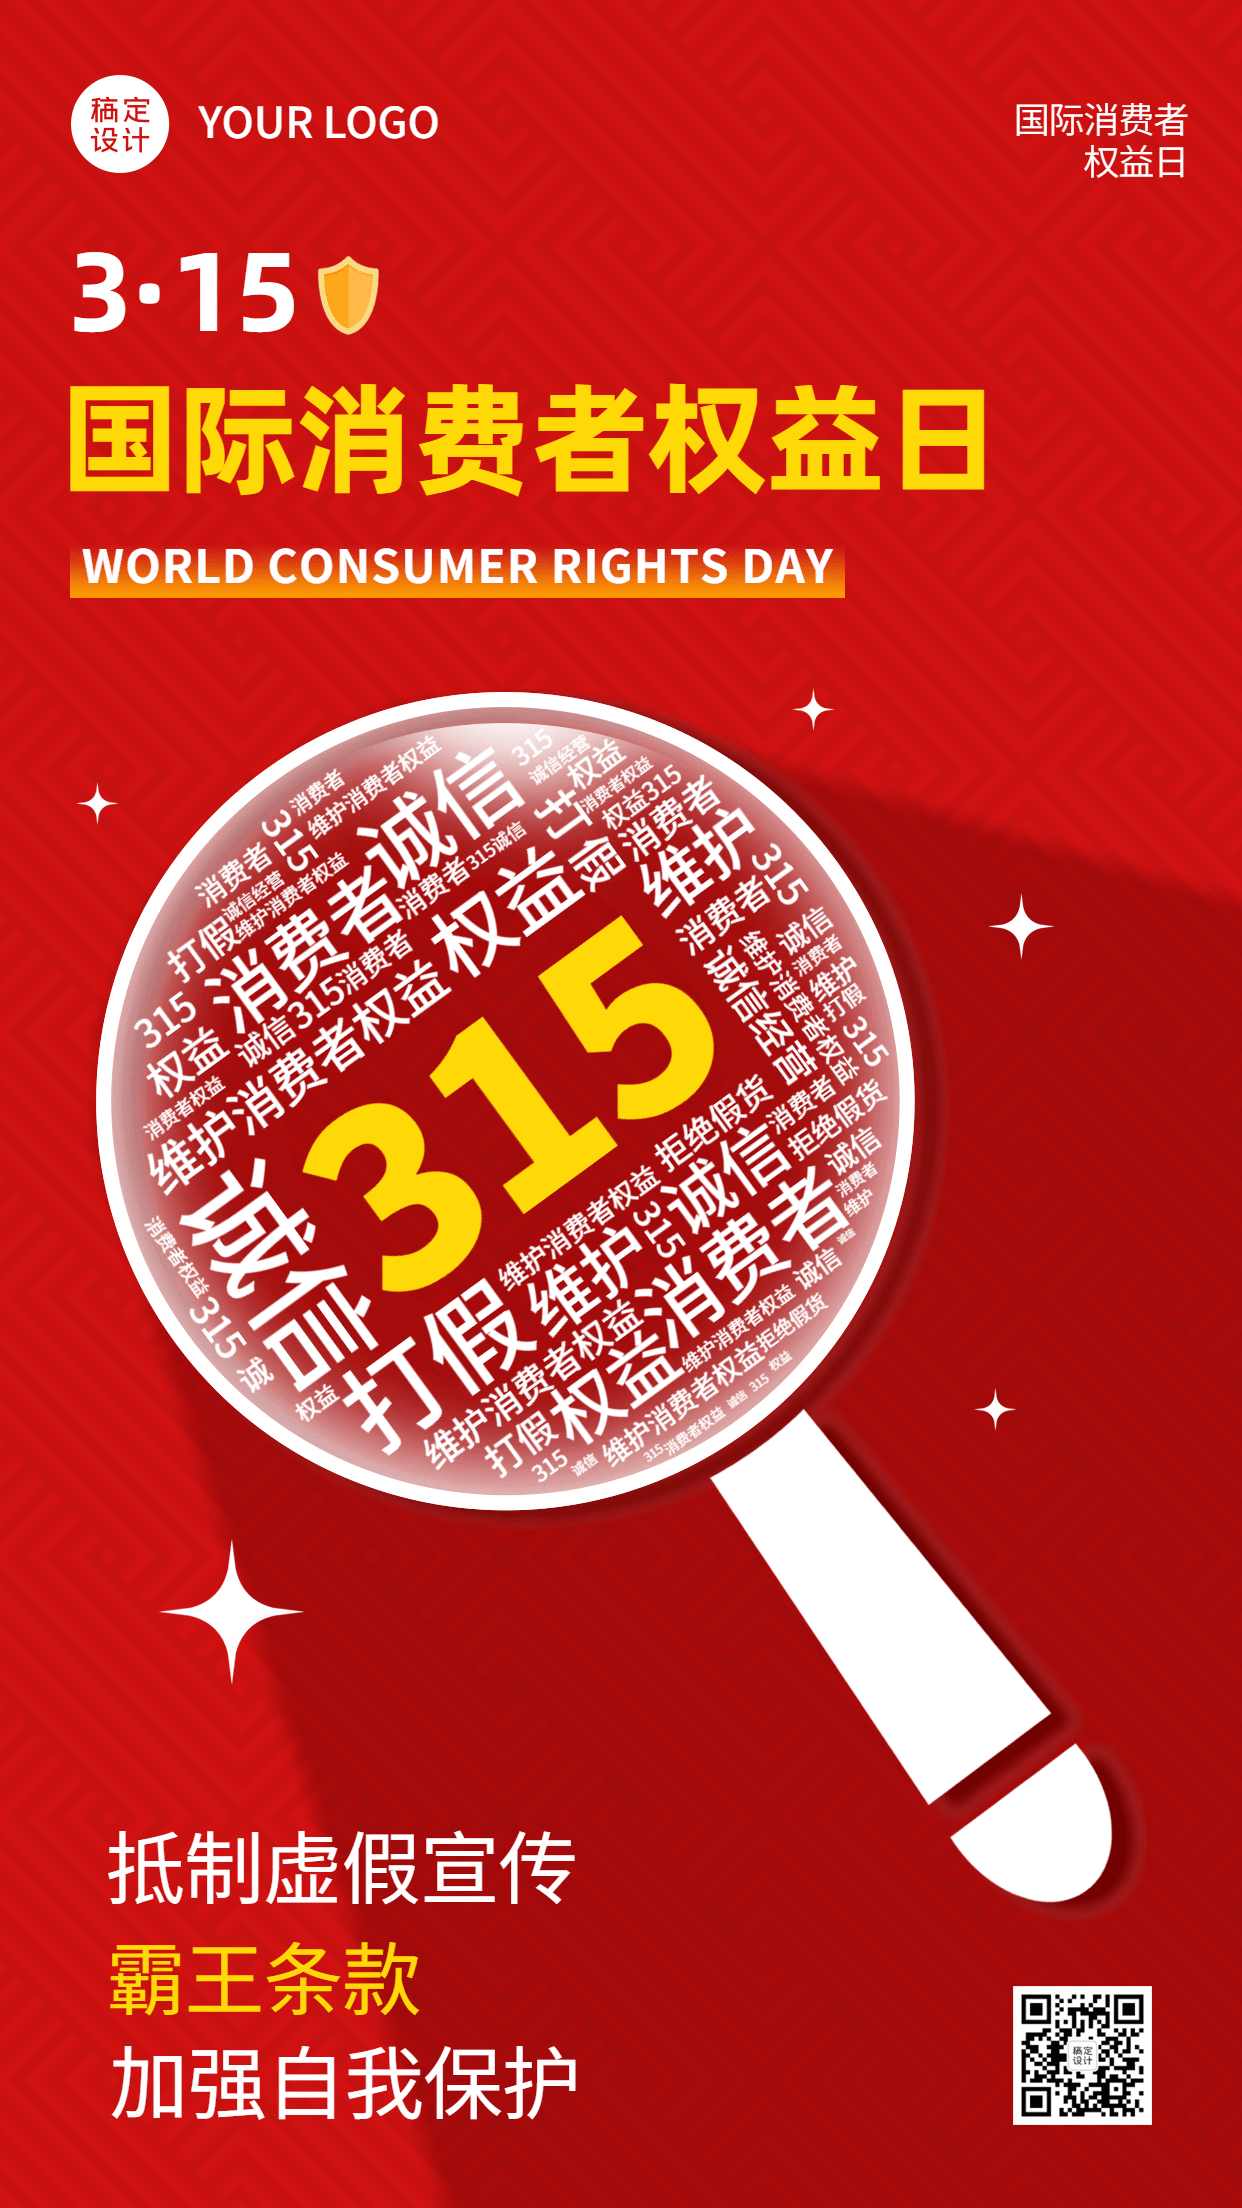 3.15消费者权益日节日宣传排版手机海报